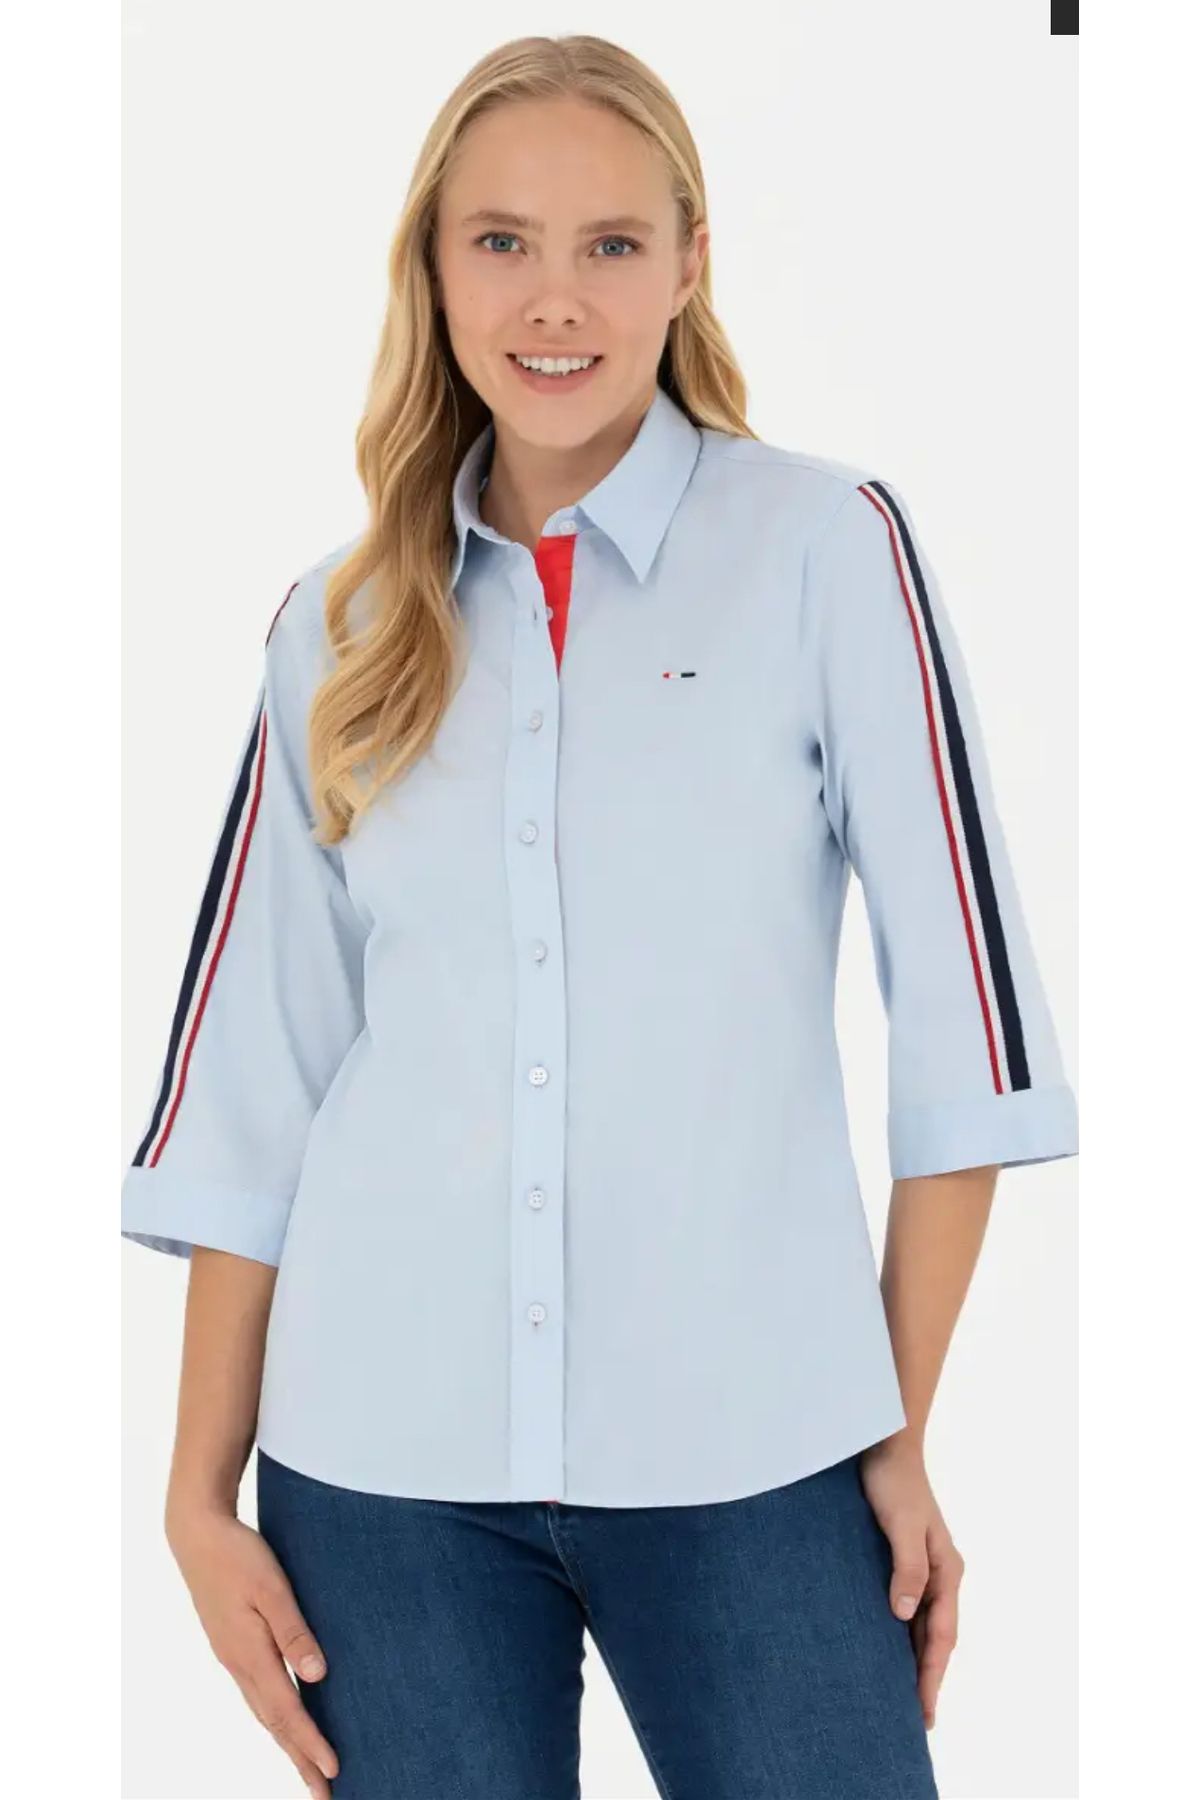 U.S. Polo Assn. Kadın Açık Mavi Kısa Kollu Gömlek LEDONA.